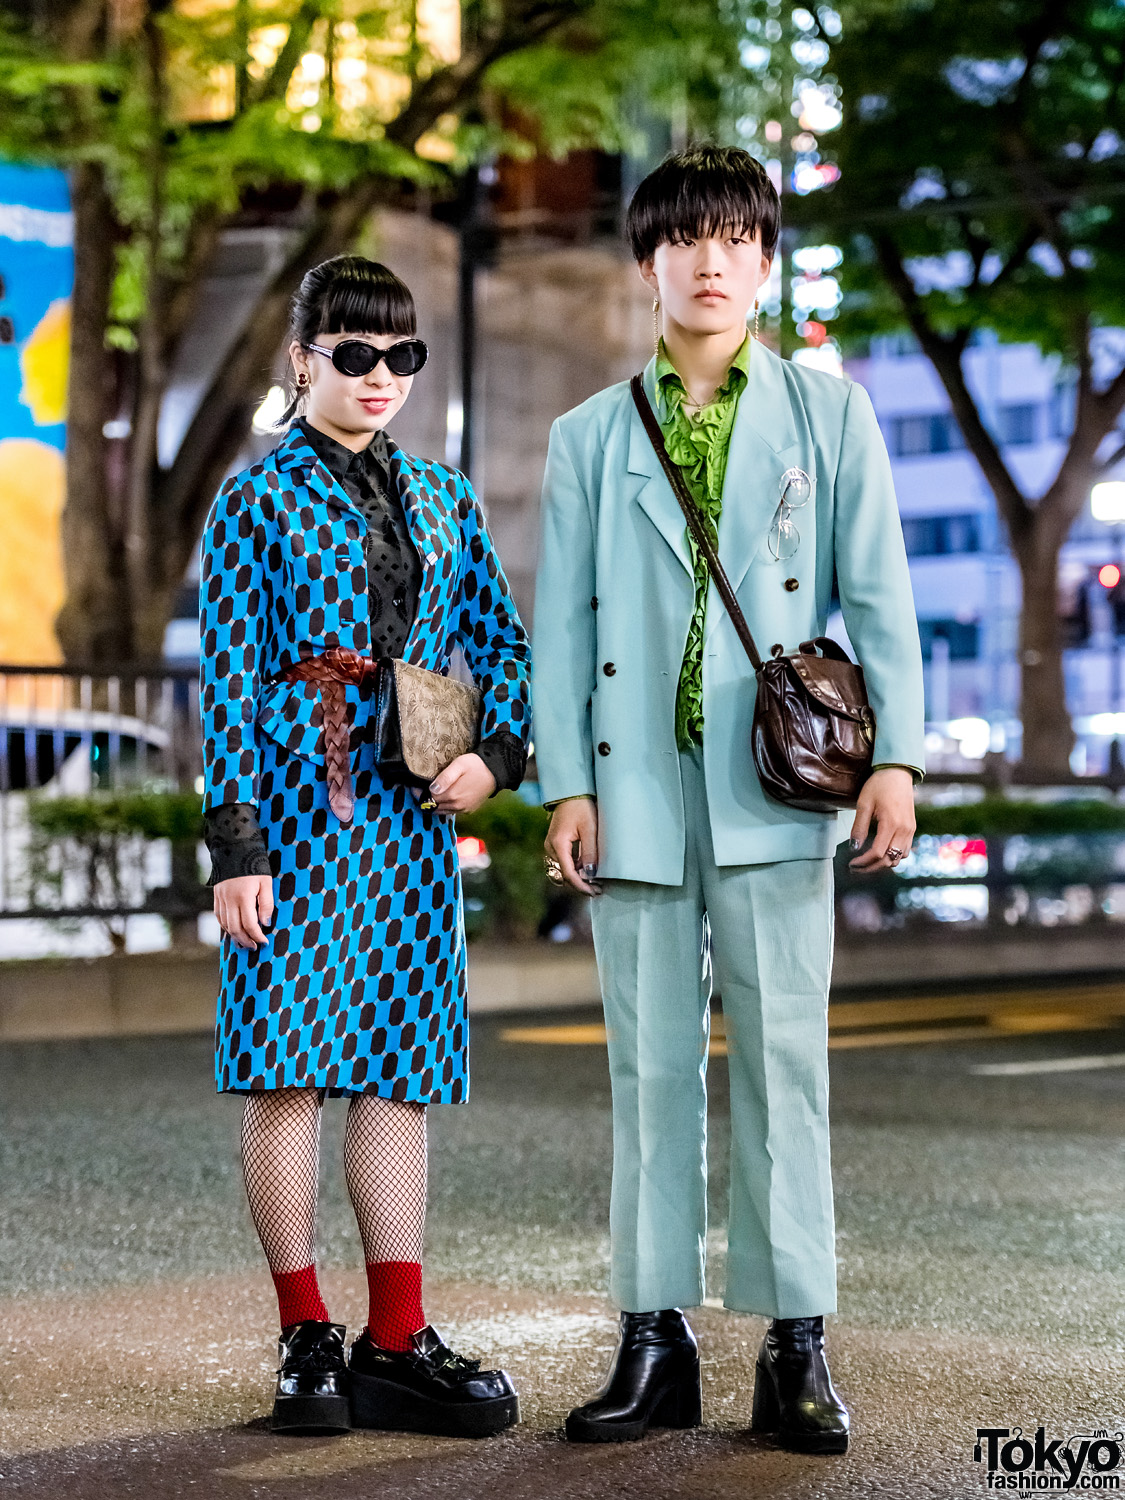 Harajuku Girl & Harajuku Boy in Vintage Tokyo Streetwear Styles